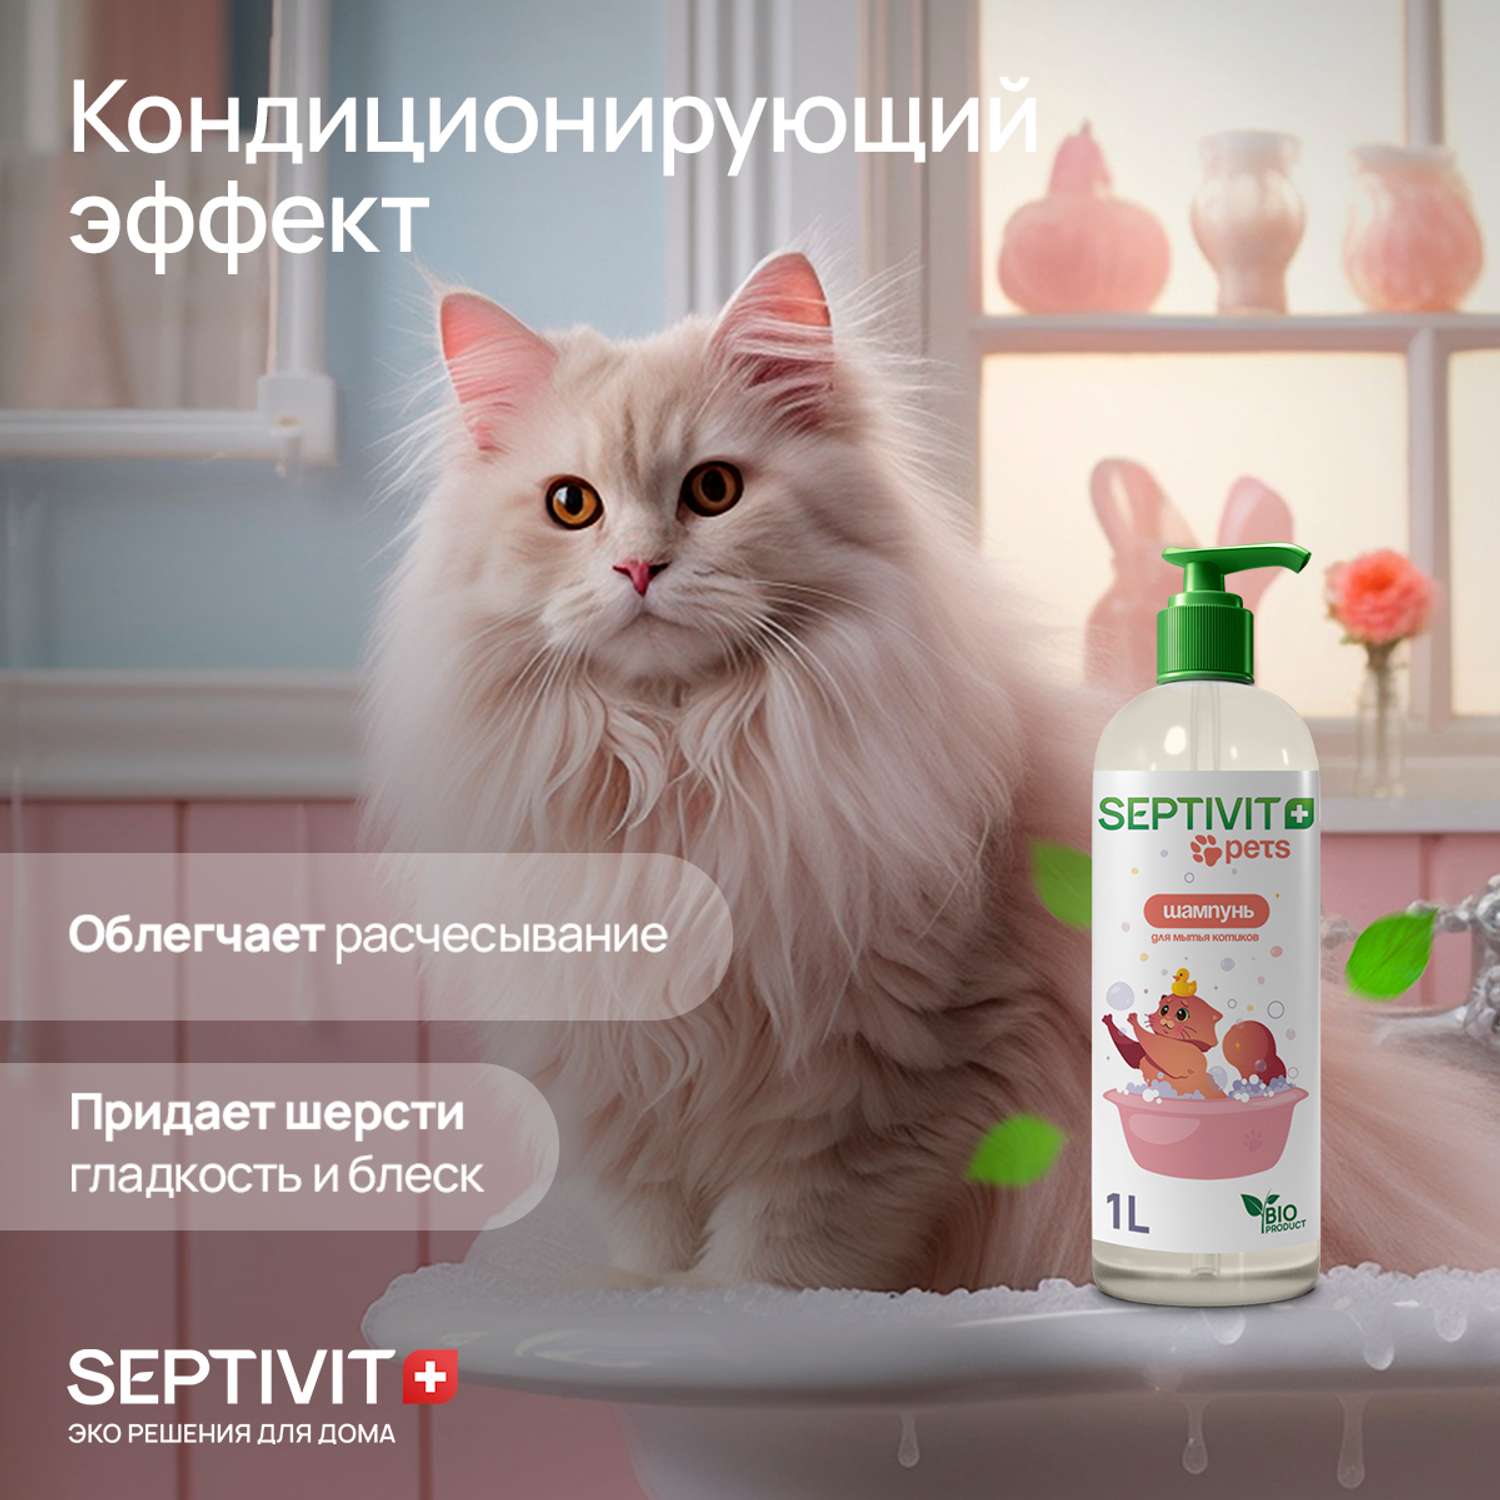 Шампунь для кошек SEPTIVIT Premium 1 л - фото 2